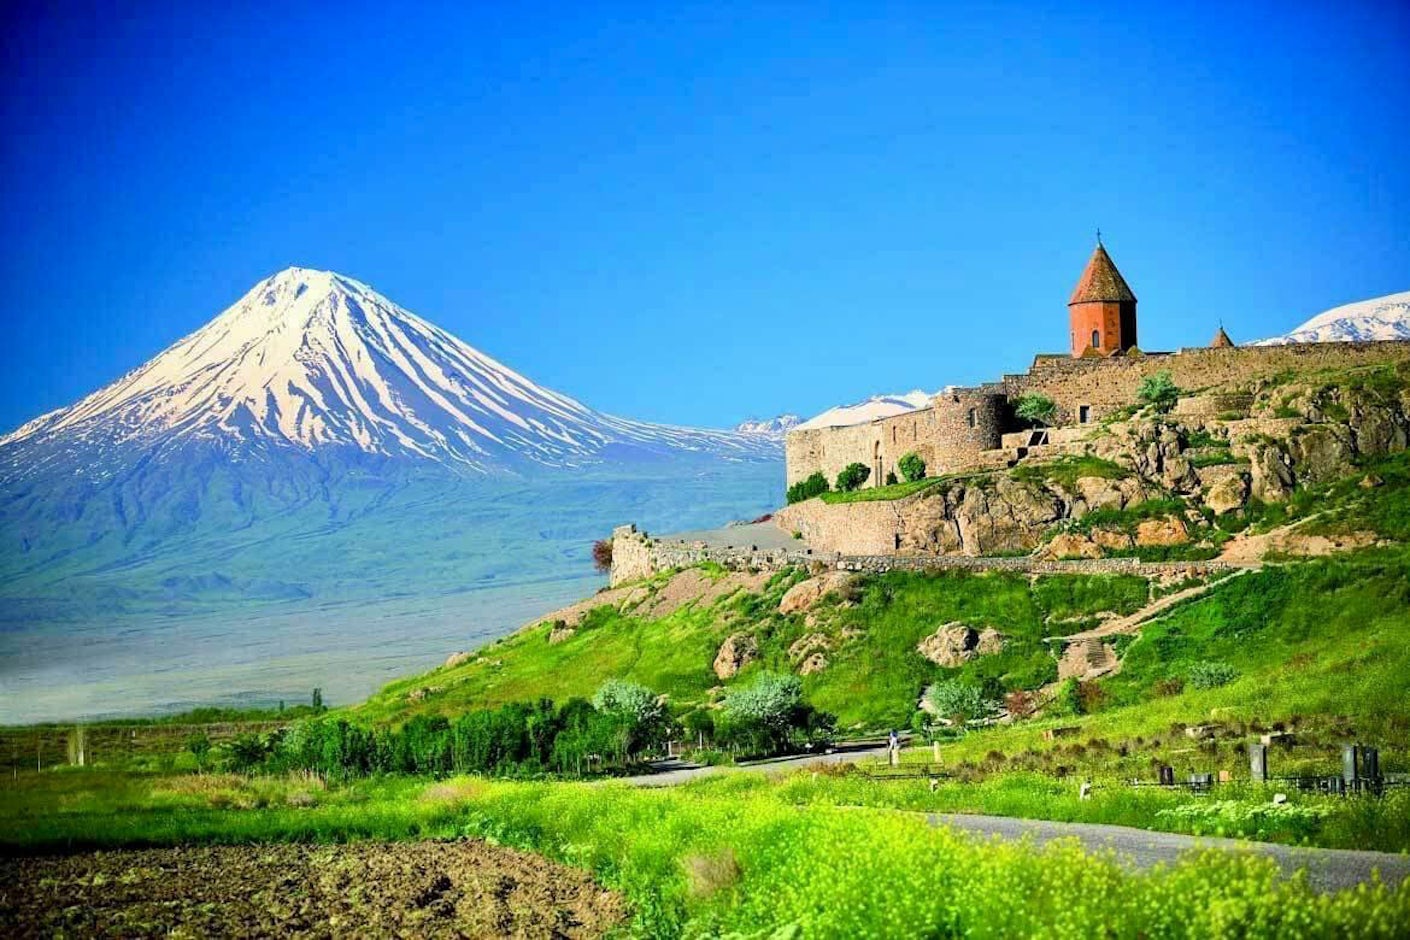 Landskap fra Armenia med klosteranlegg og Ararat-fjellet i bakgrunnen